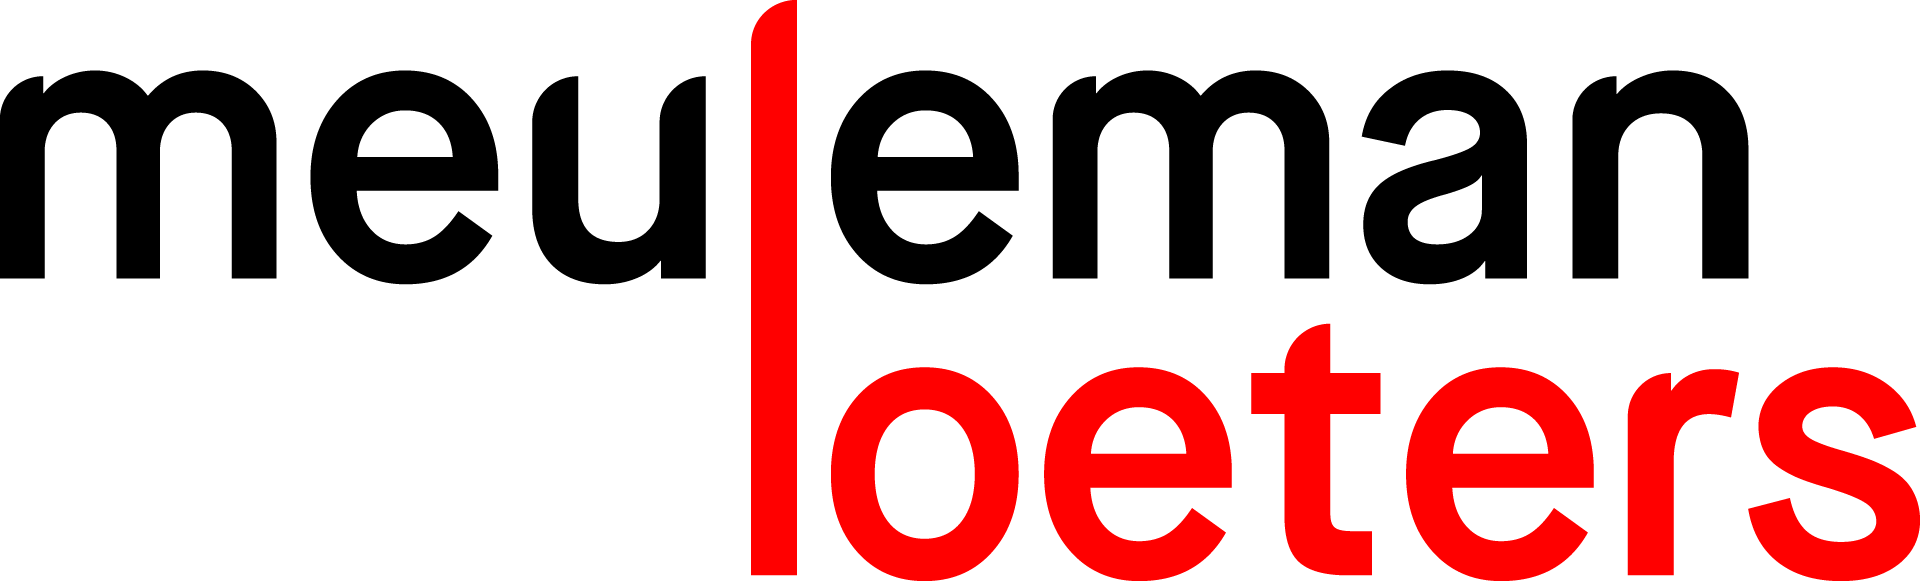 Logo van Meuleman & Loeters 